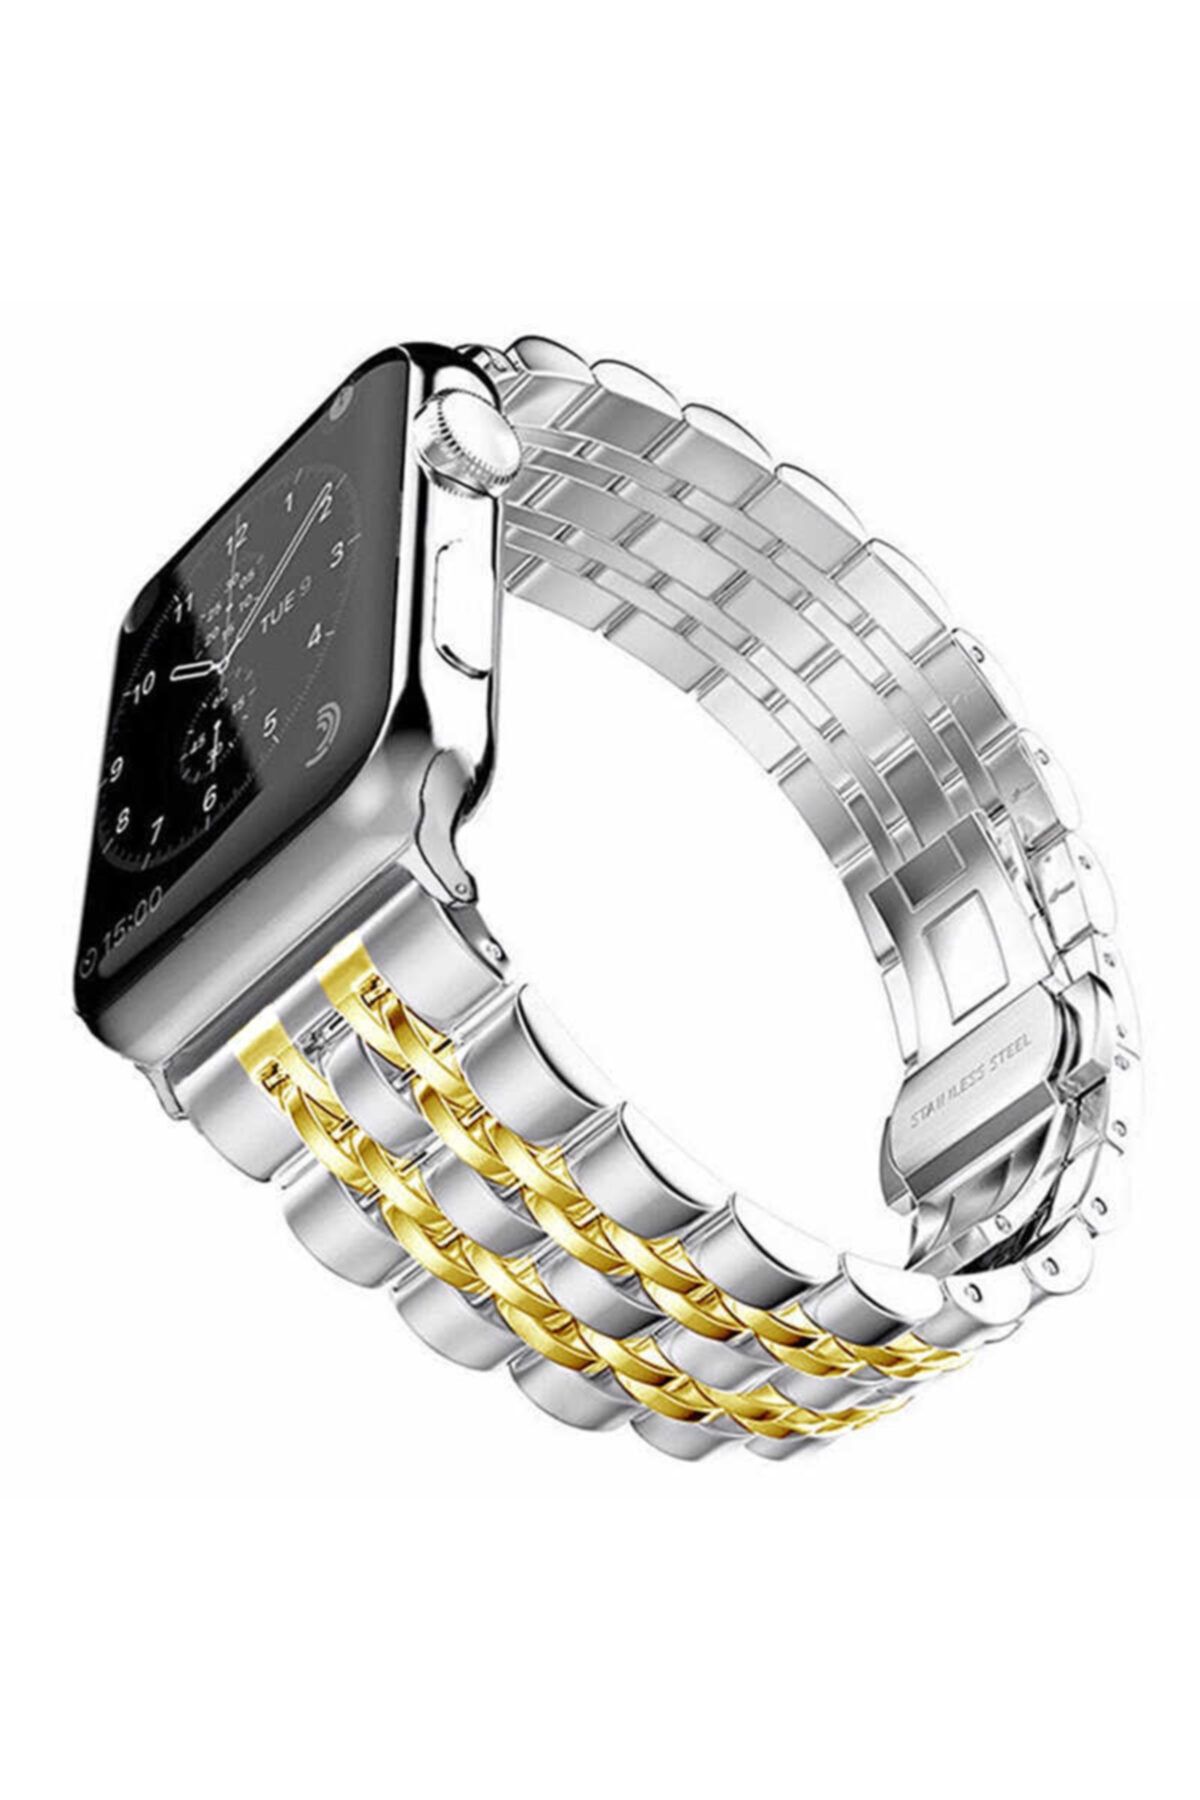 Nezih Case Apple Watch 2 3 4 5 6 Serisi 44 mm Metal Baklalı Saat Kordonu Gold İşlemeli